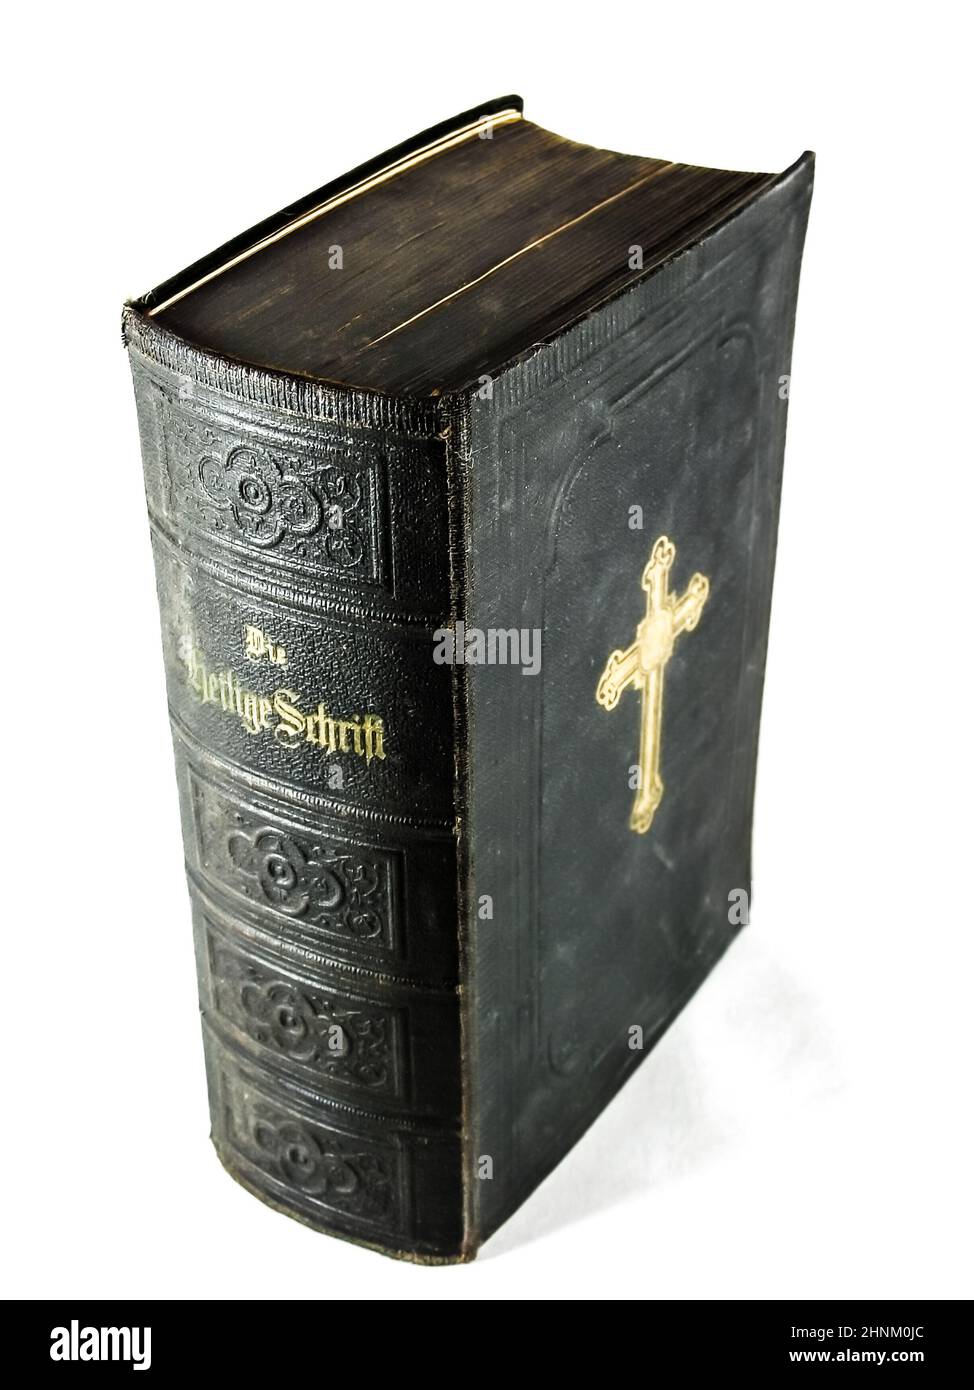 Vida quieto y primeros planos de libros viejos, libros de la biblia santa y de himnos Foto de stock